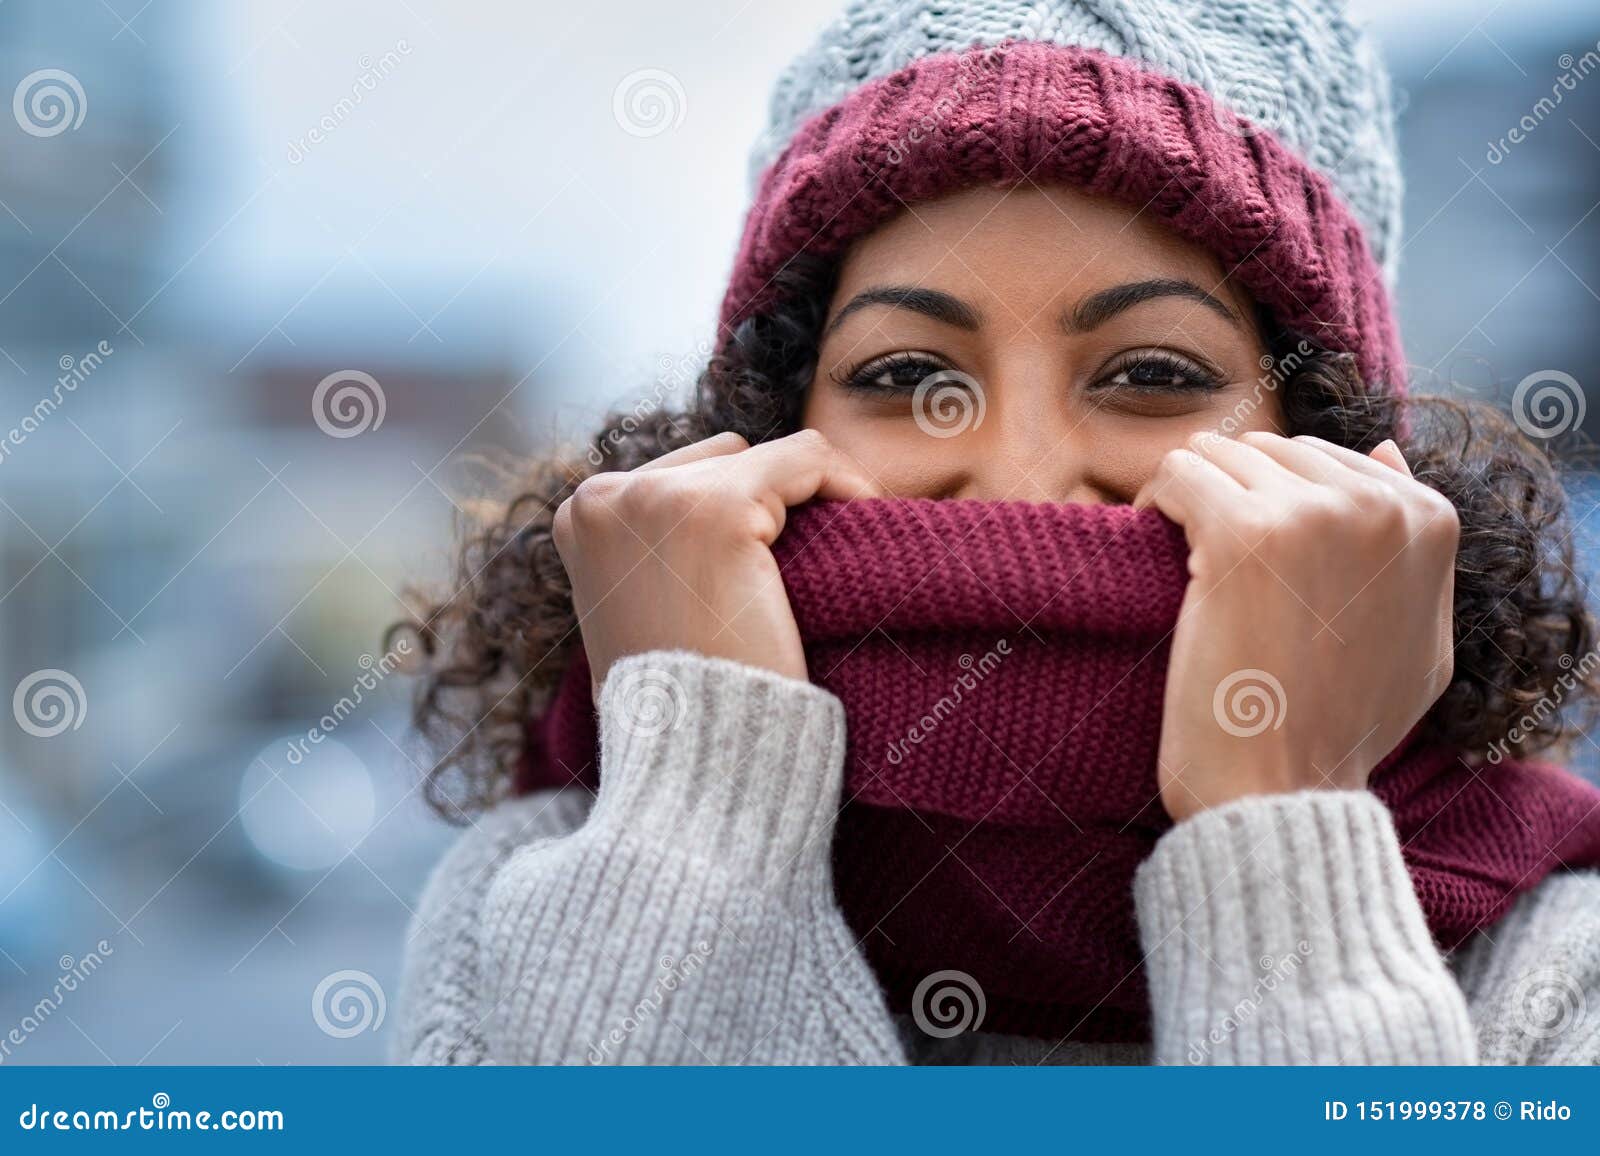 beautiful woman hiding face in woolen scarf